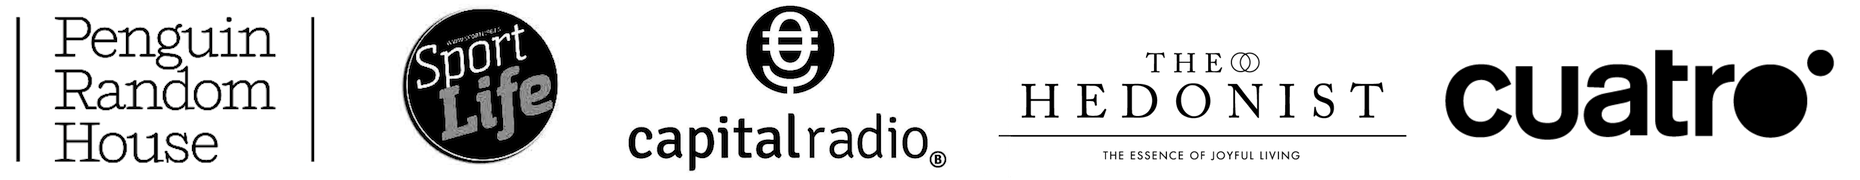 banner de logos en horizontal blanco y negro